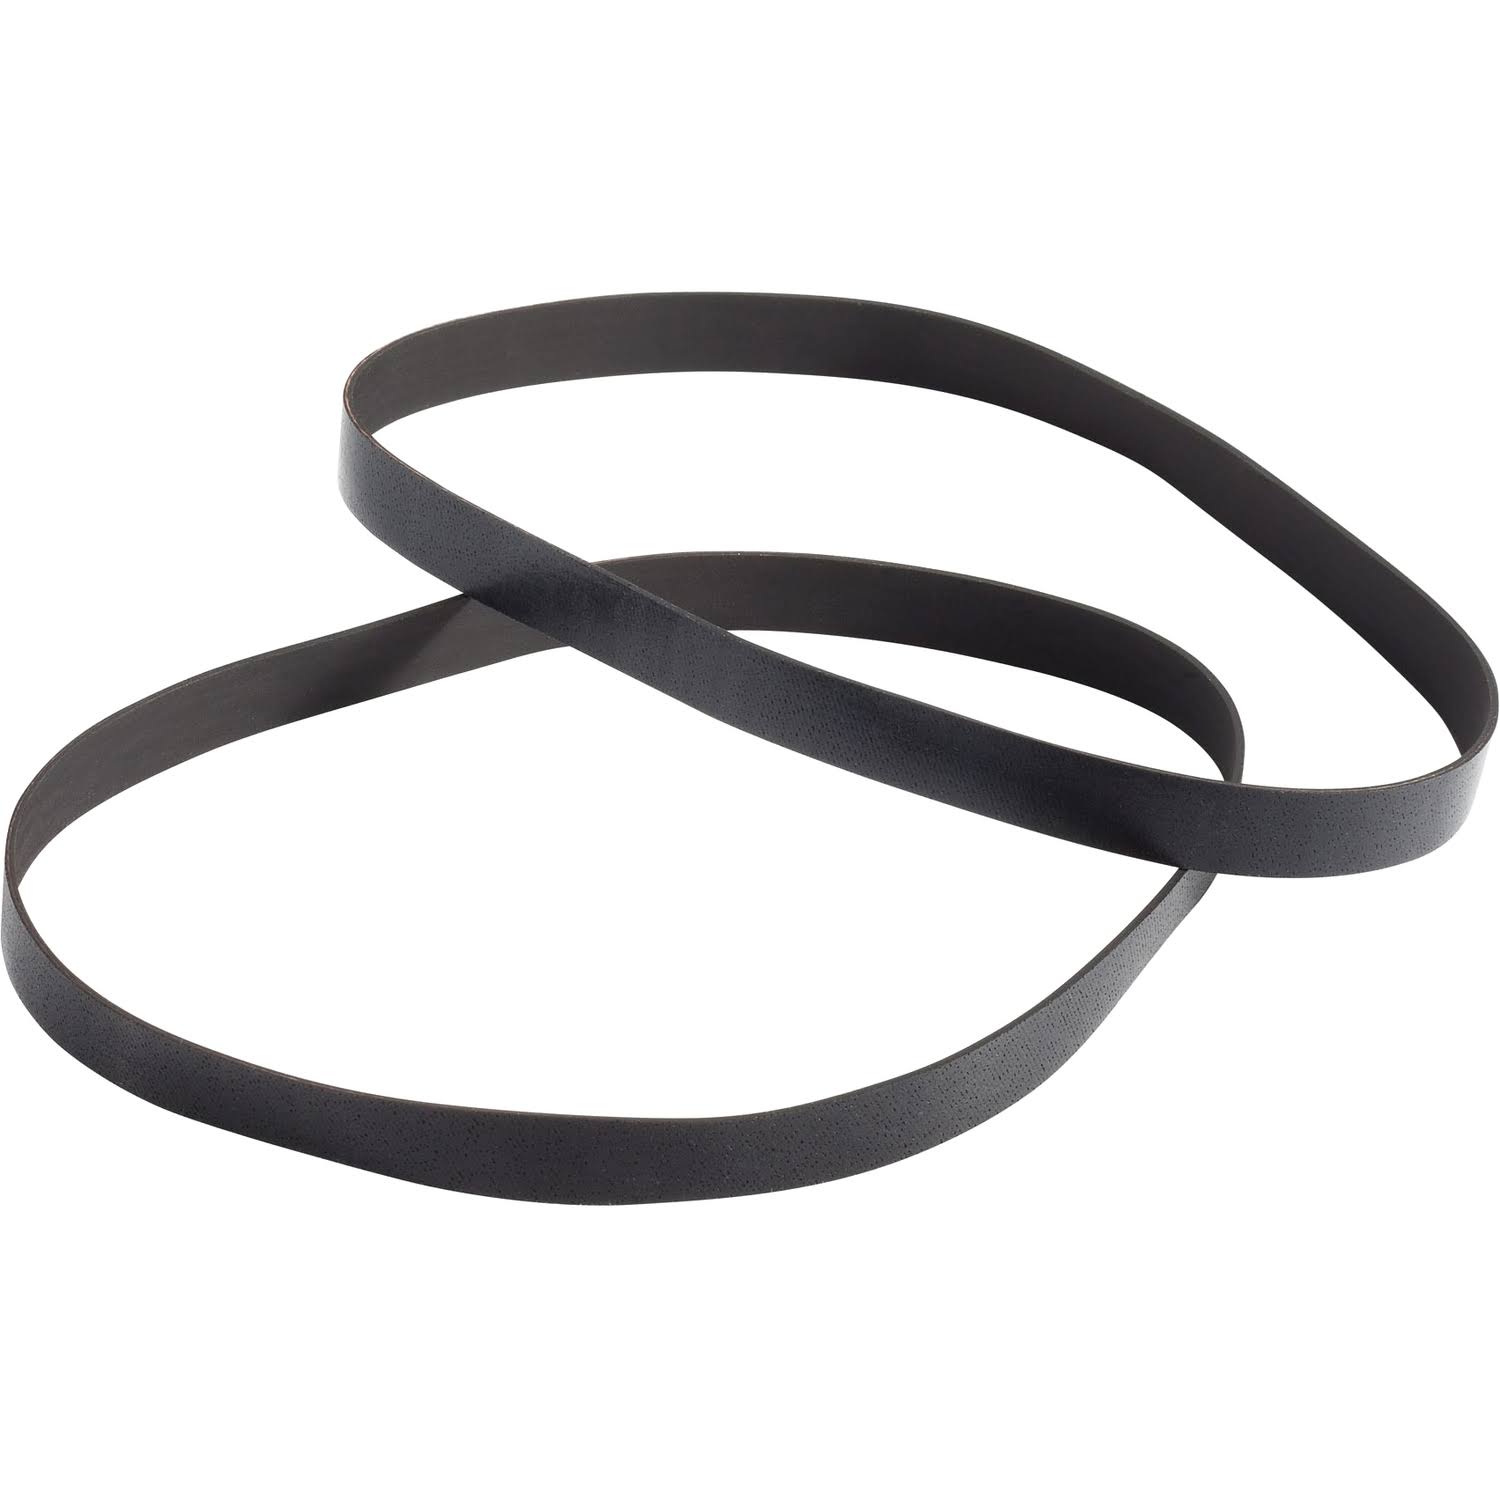 Hoover T-Series Flat Belt